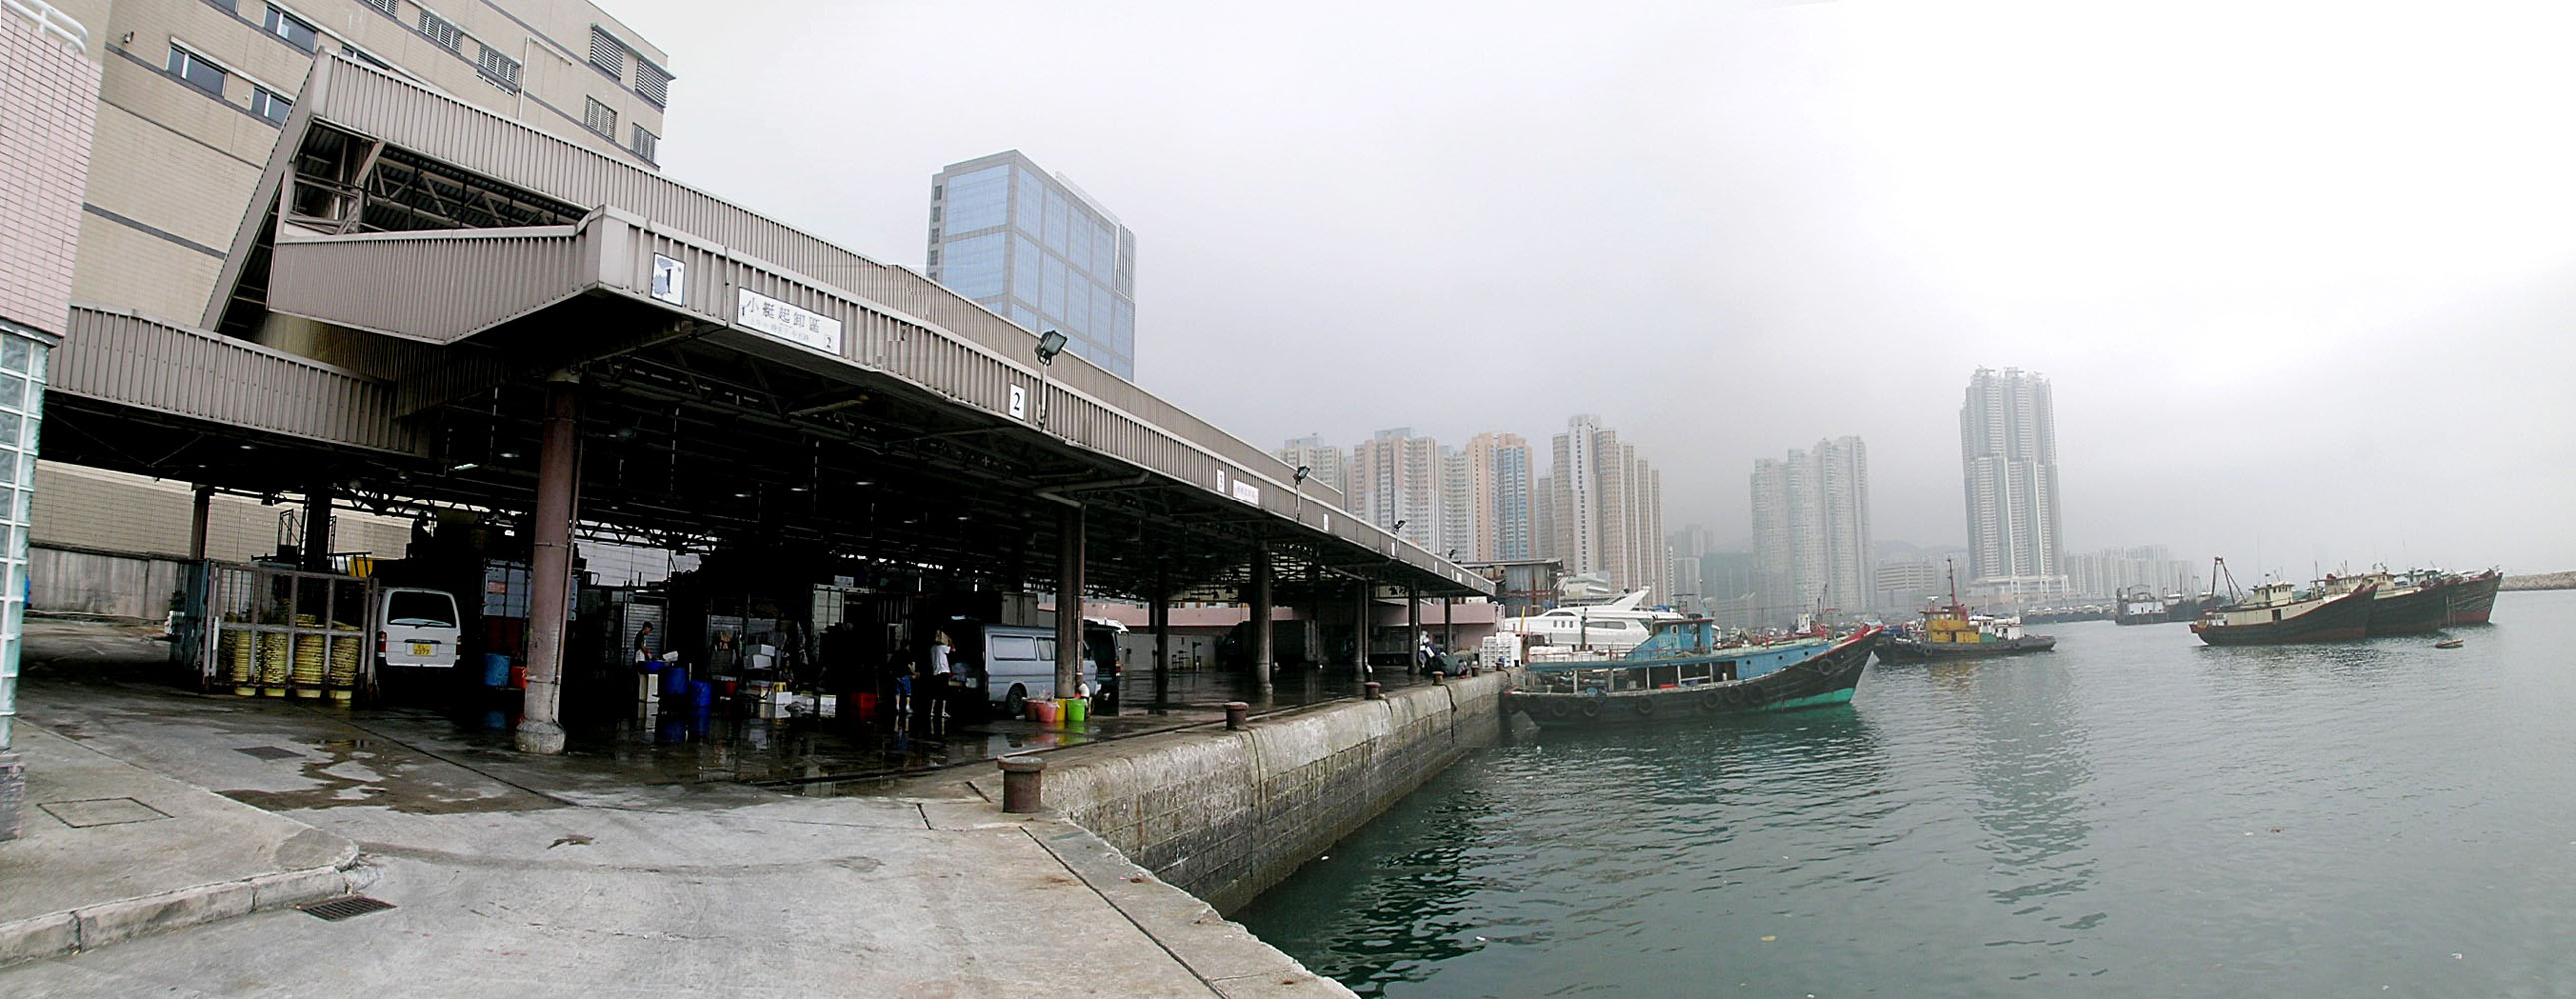 相片 7: 筲箕灣魚類批發市場